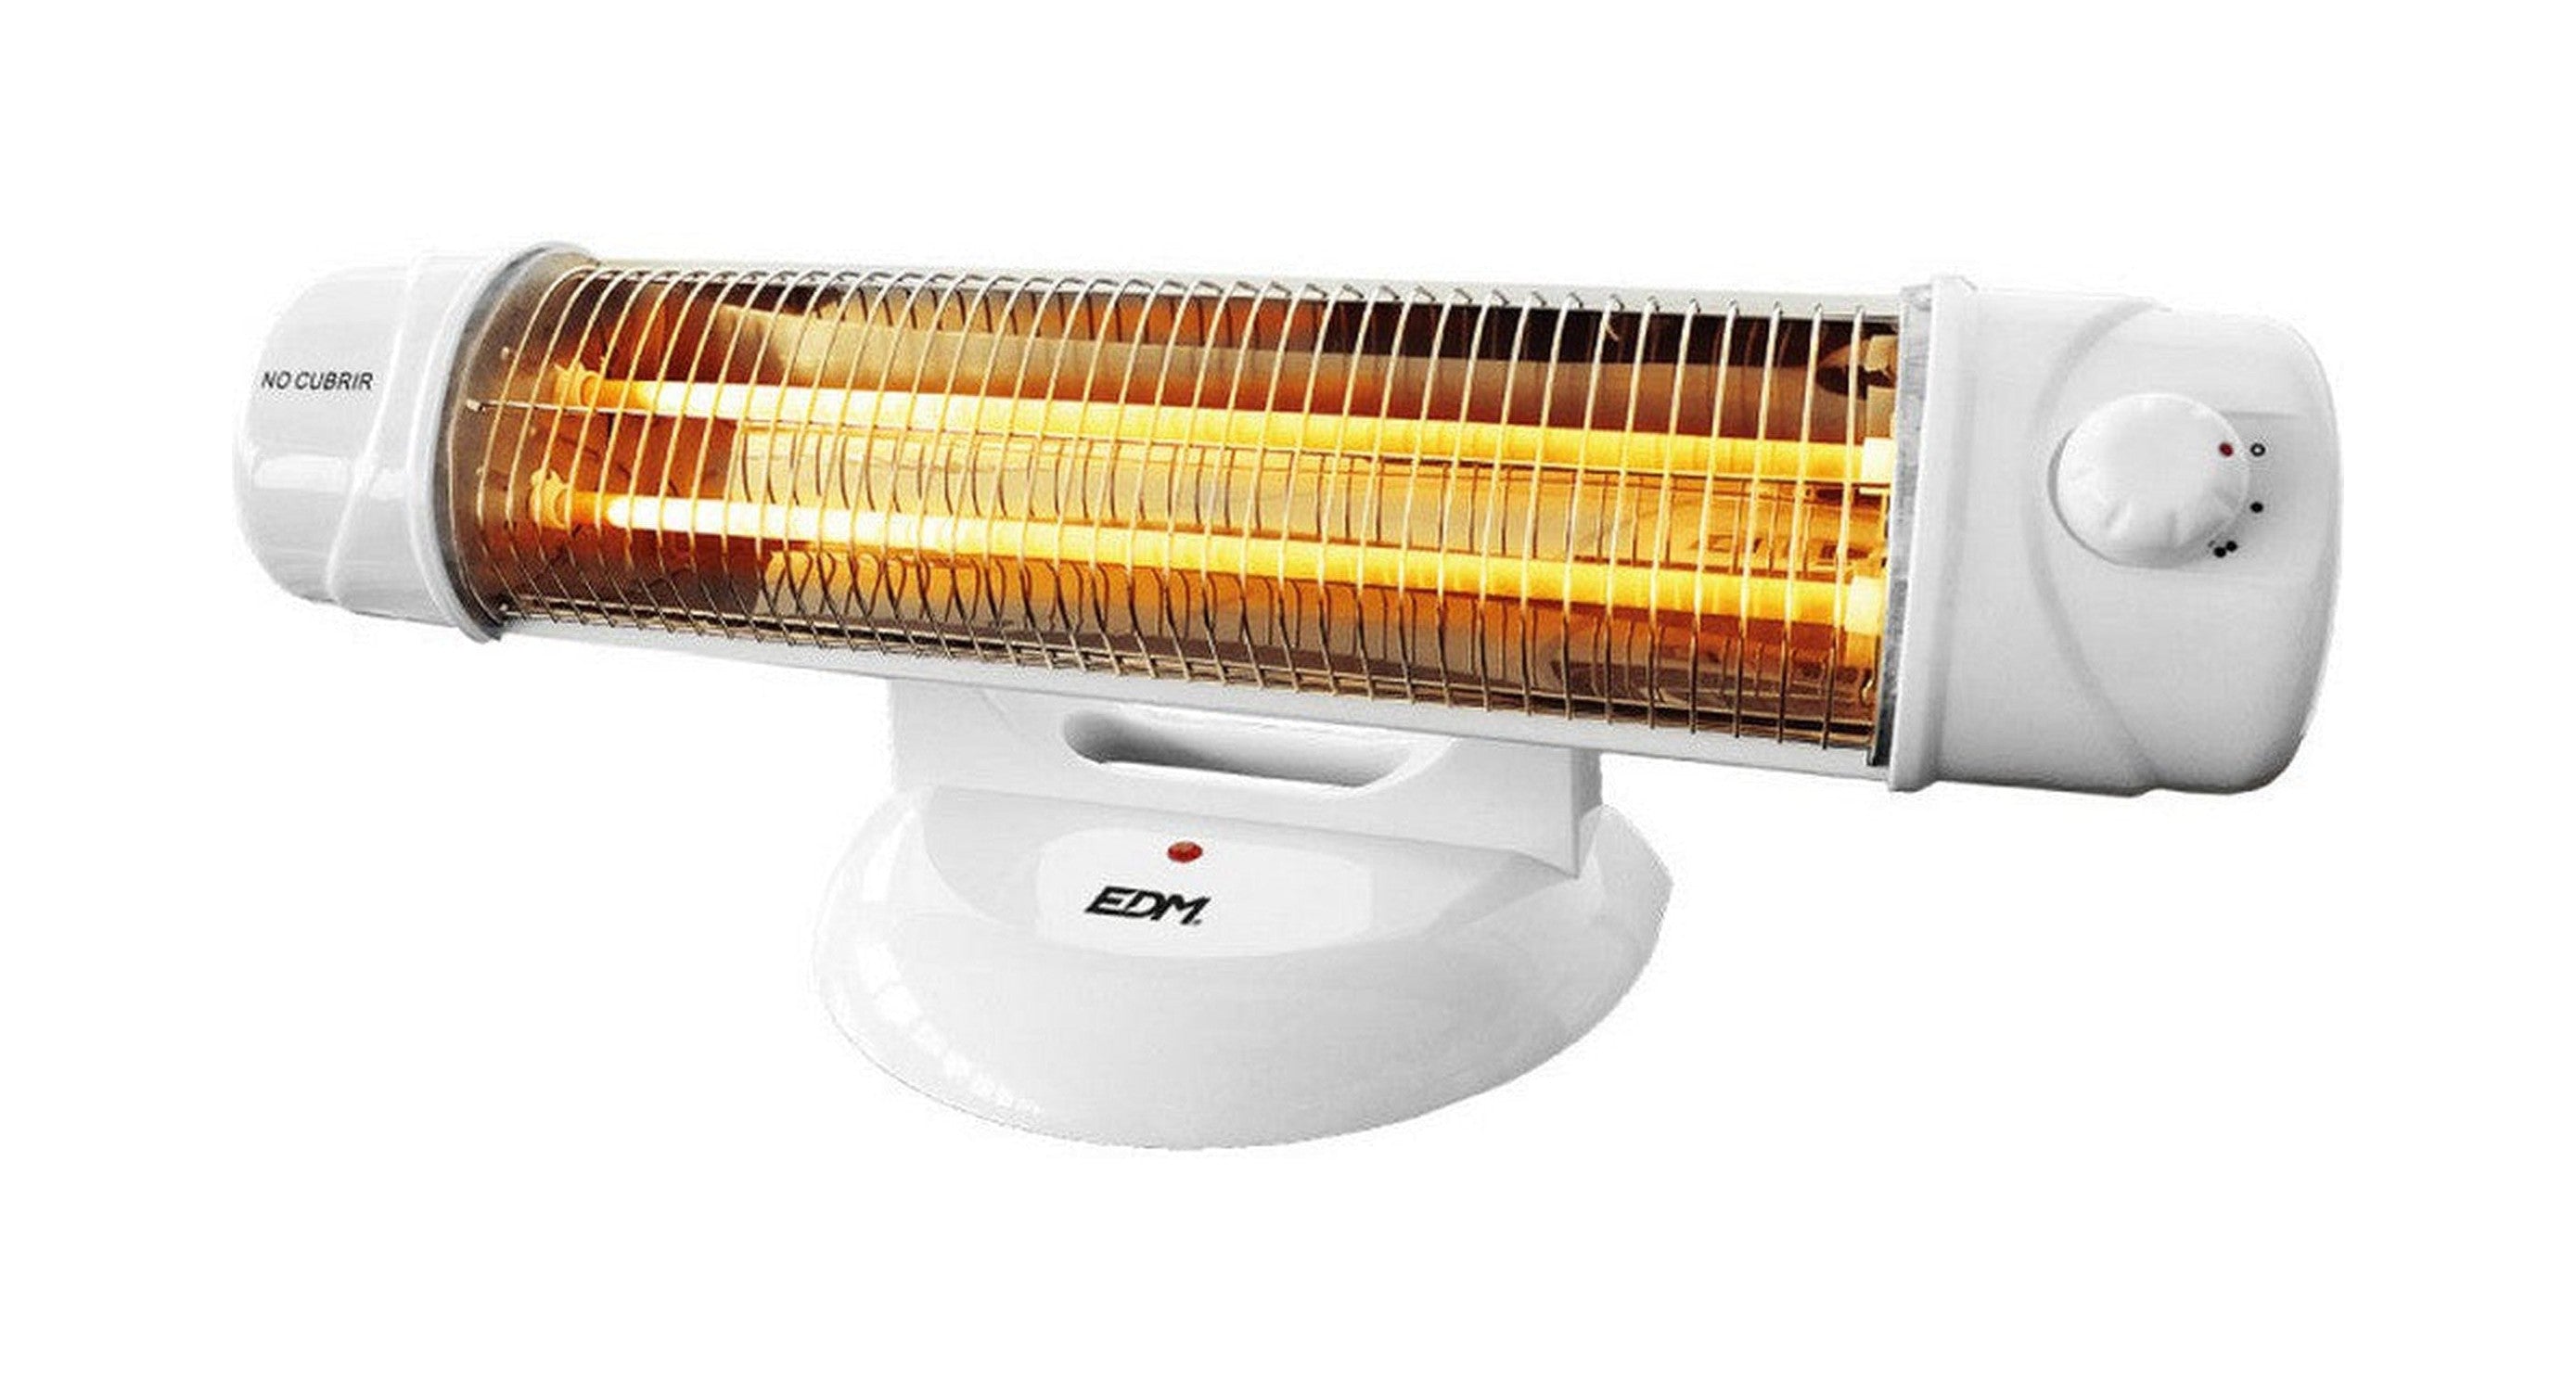 Quartz Heater EDM 07131 600-1200 W White